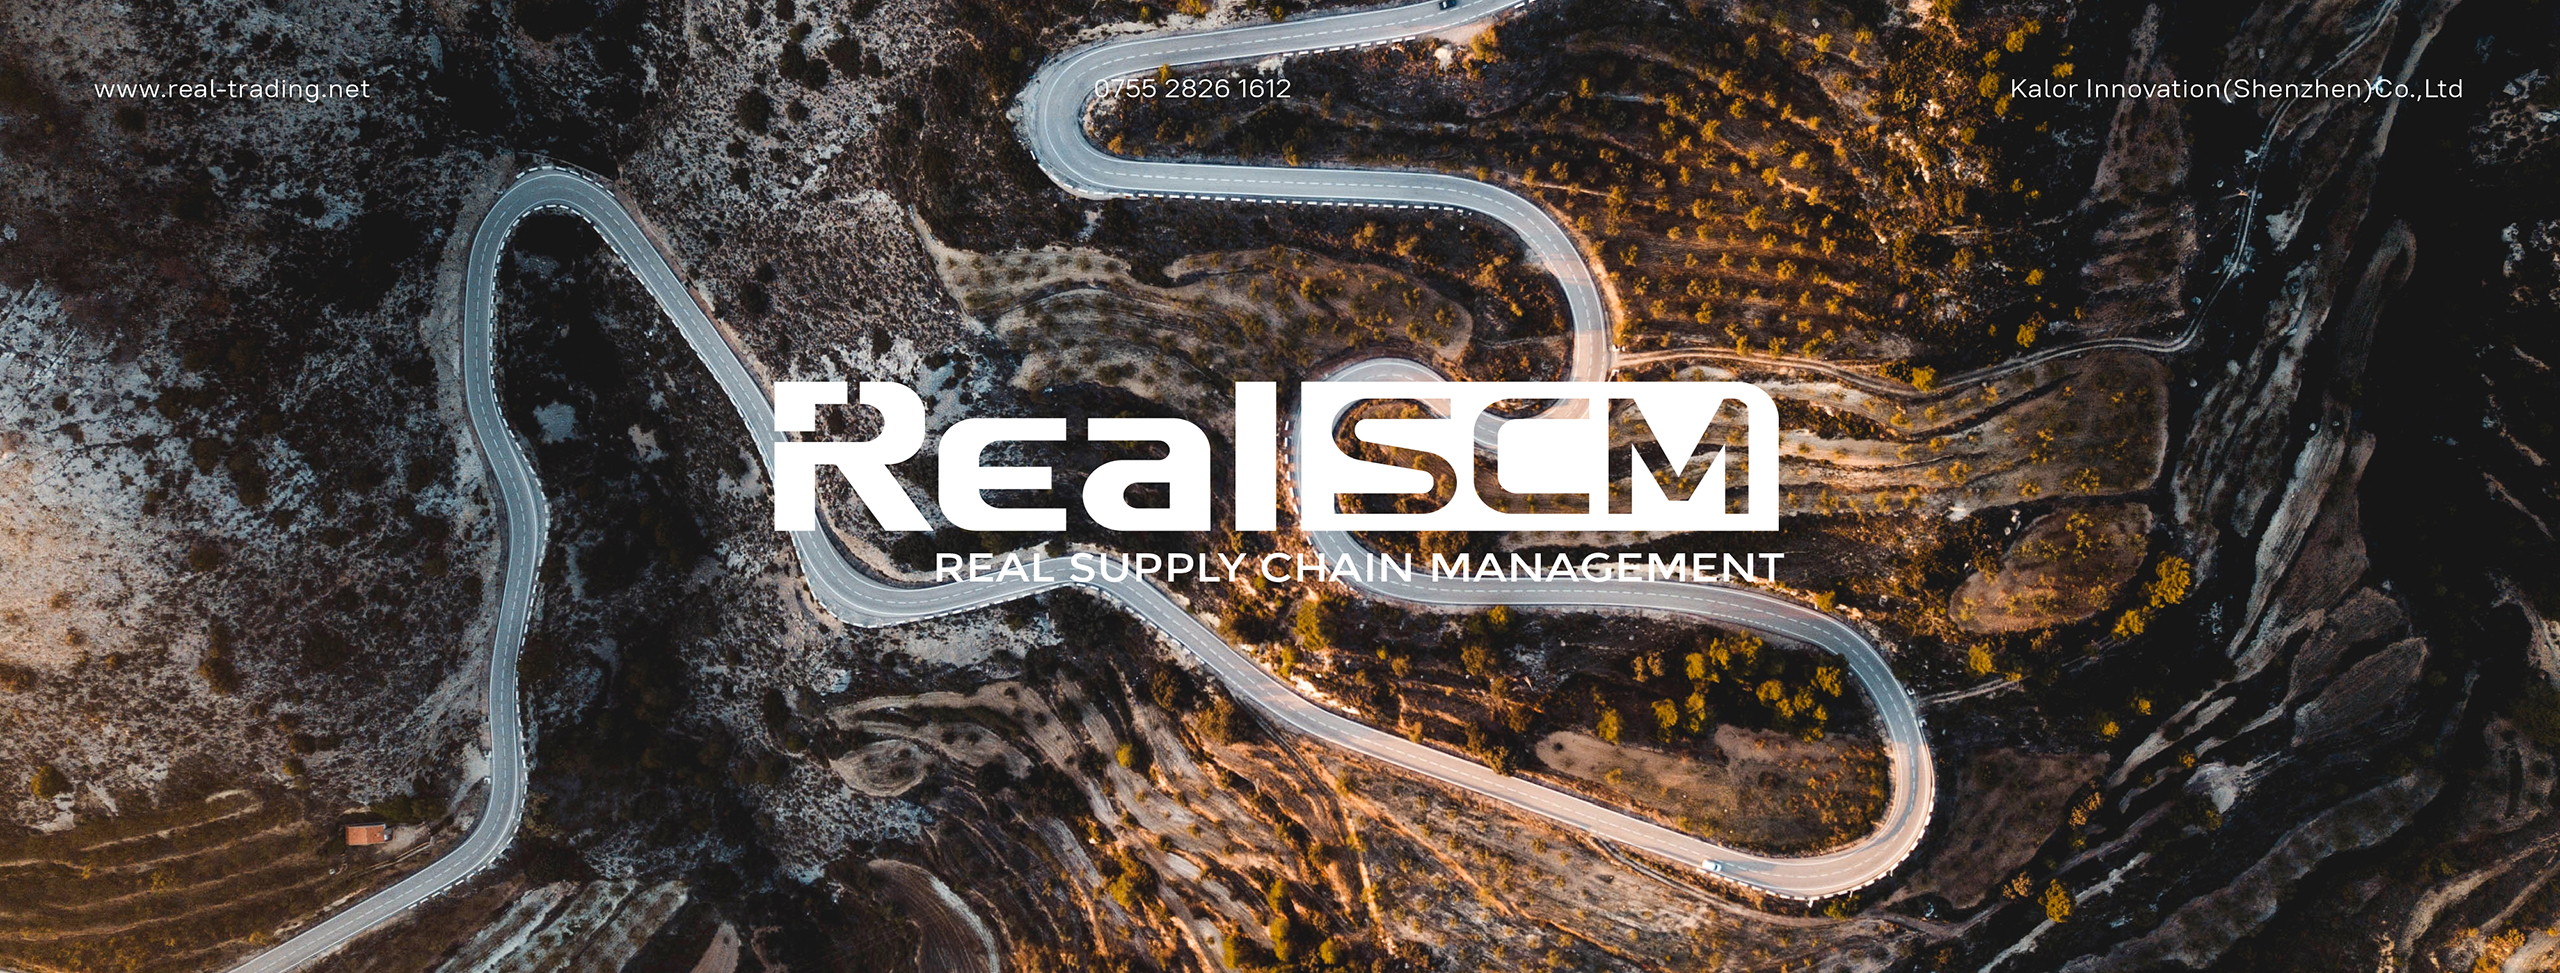 RealSCM案例整理站酷版-32.jpg